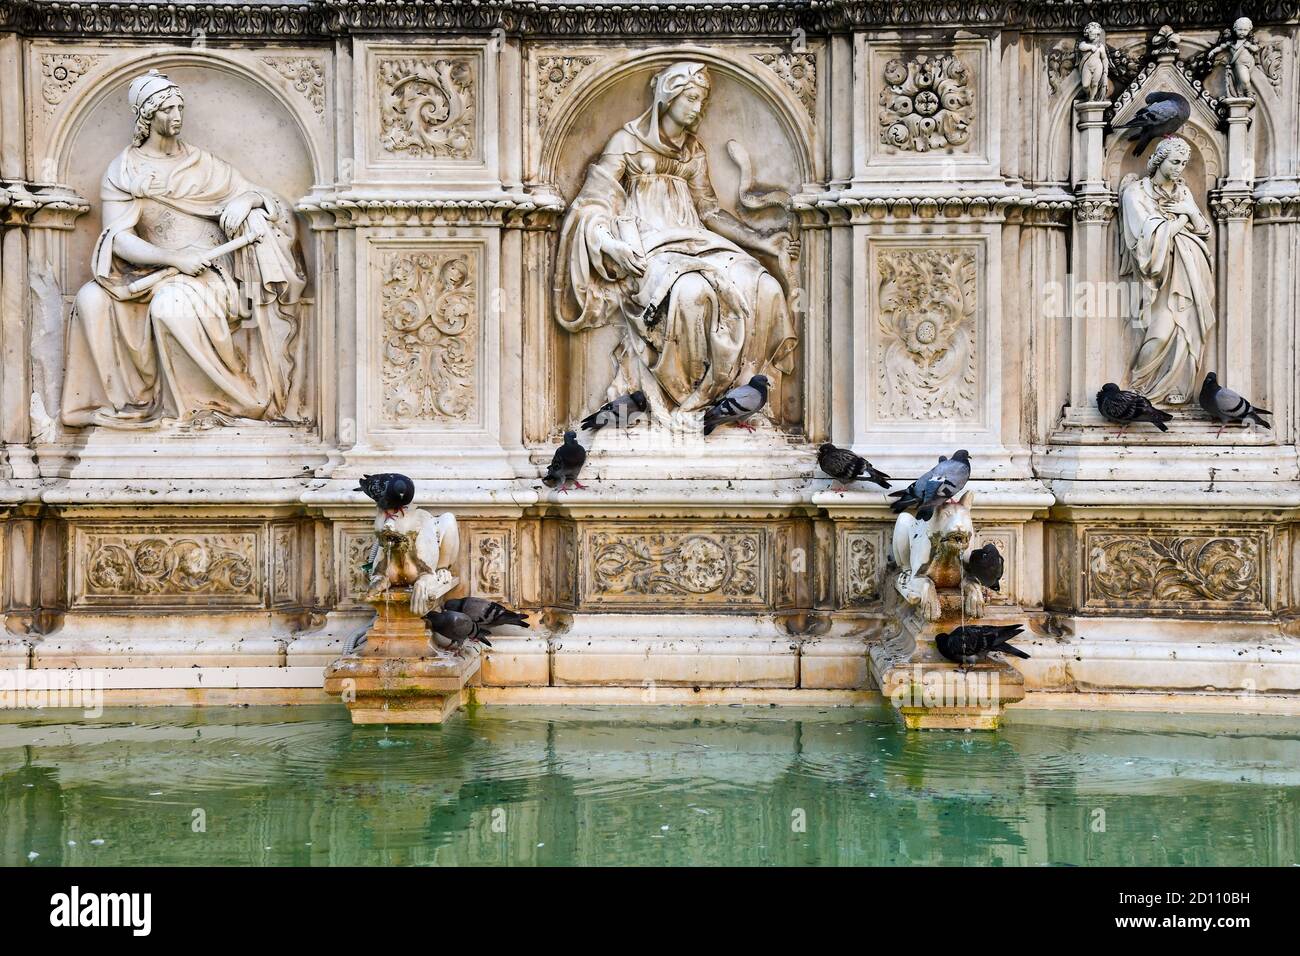 Particolare della Fonte Gaia, una fontana monumentale in Piazza del campo nel centro di Siena, patrimonio dell'umanità dell'UNESCO, Toscana, Italia Foto Stock